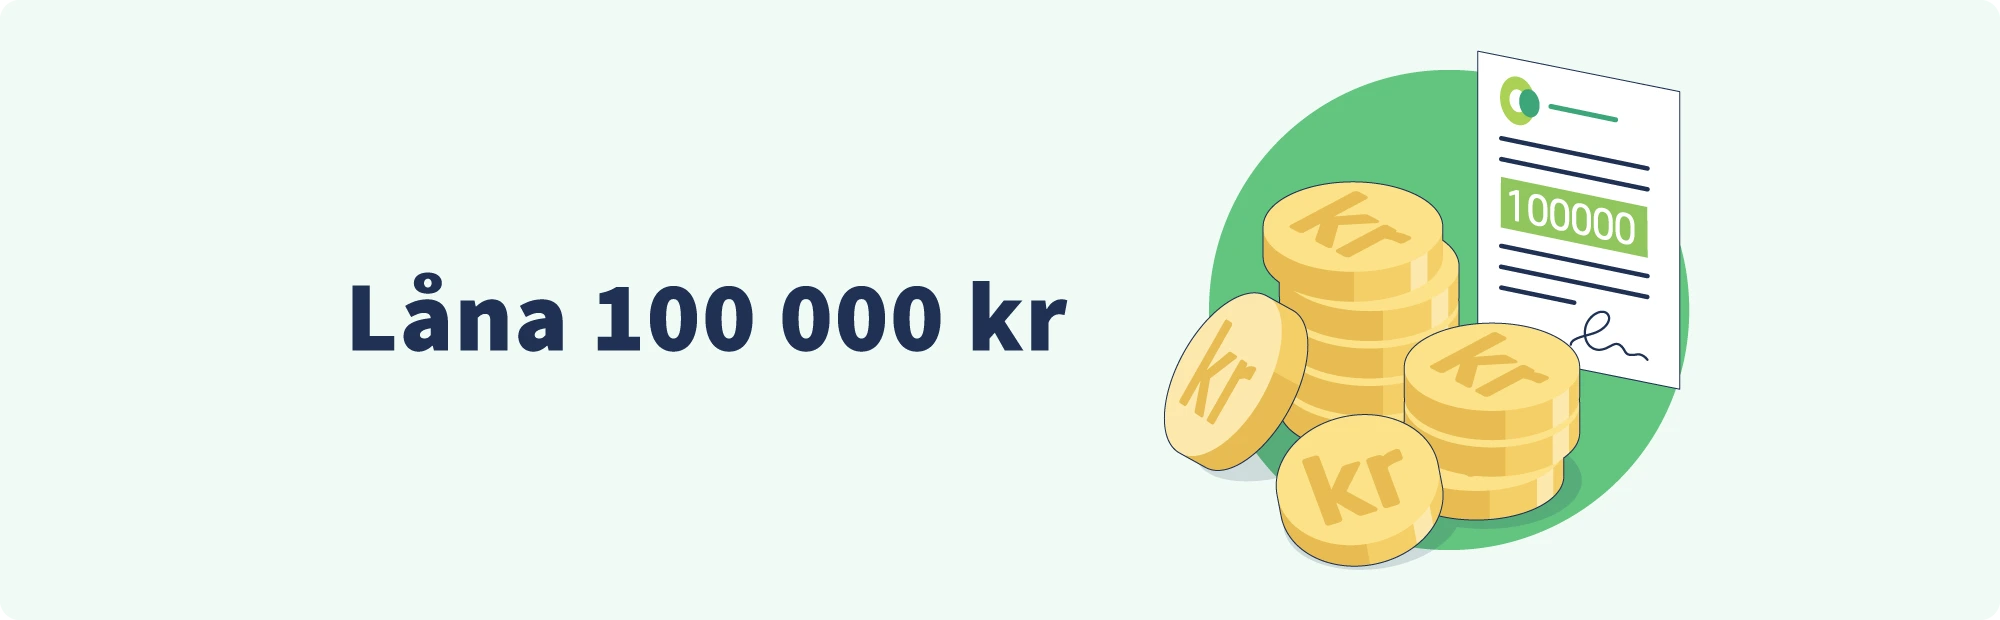 Låna 100 000 kr